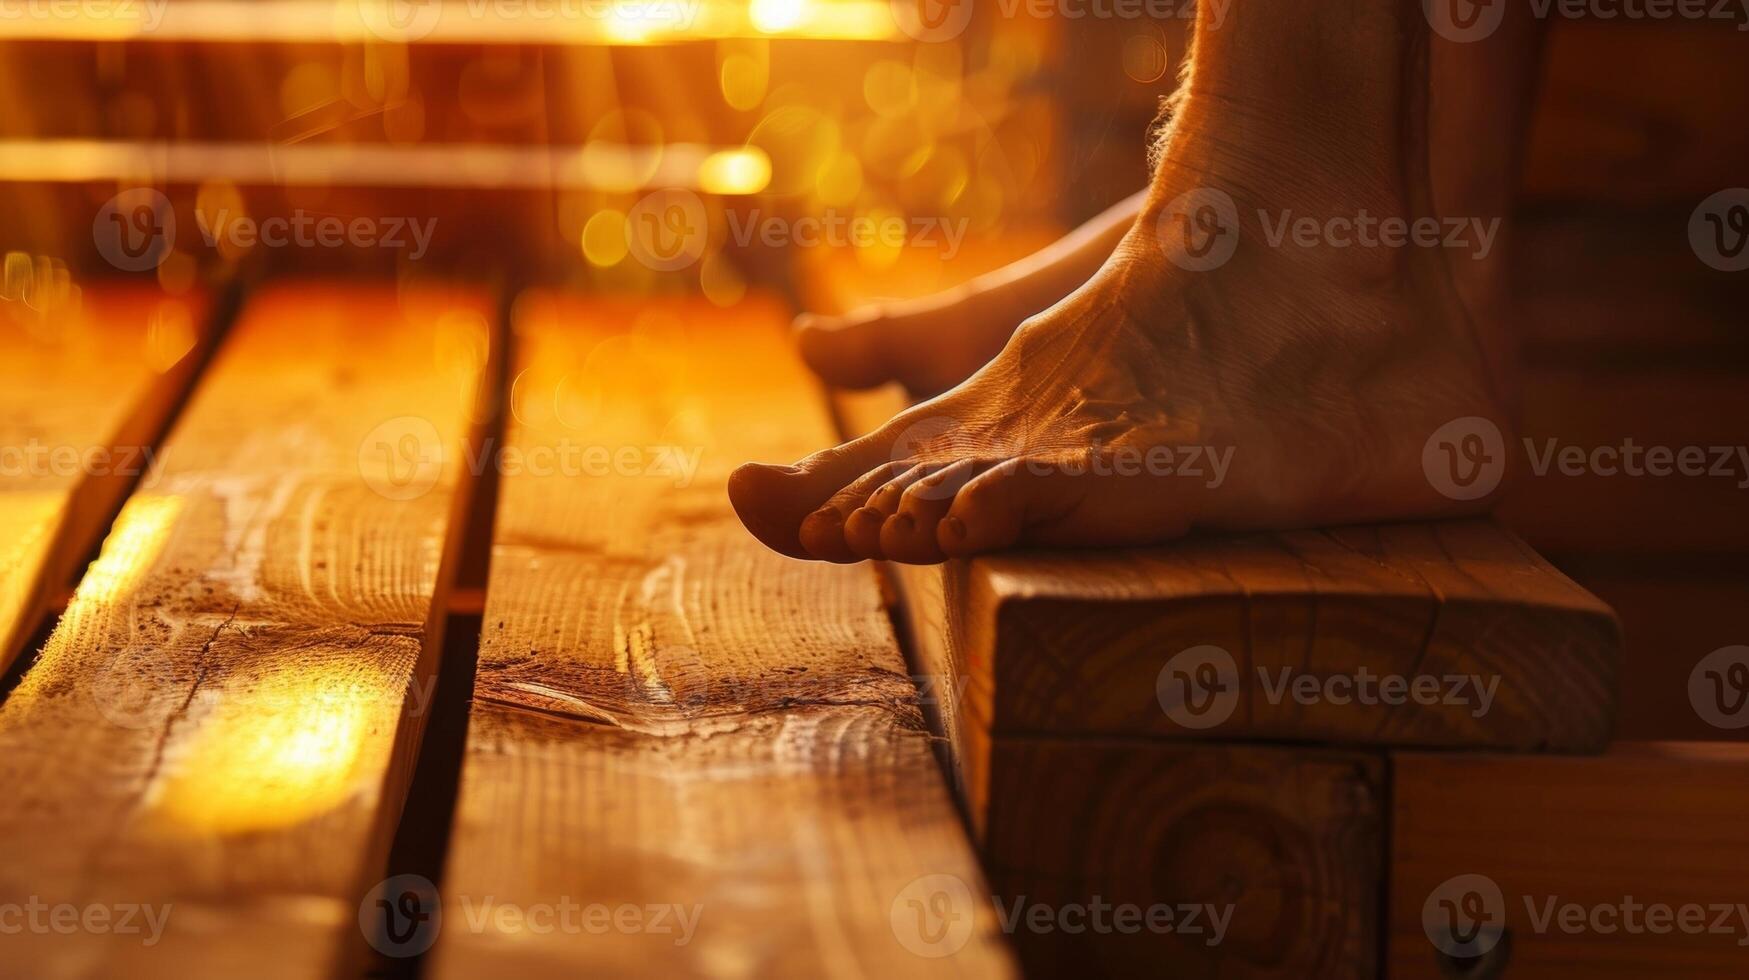 Füße baumeln aus das Kante von ein Saunen Bank präsentieren das heizt Fähigkeit zu lindern Joint Schmerzen und Steifheit. foto